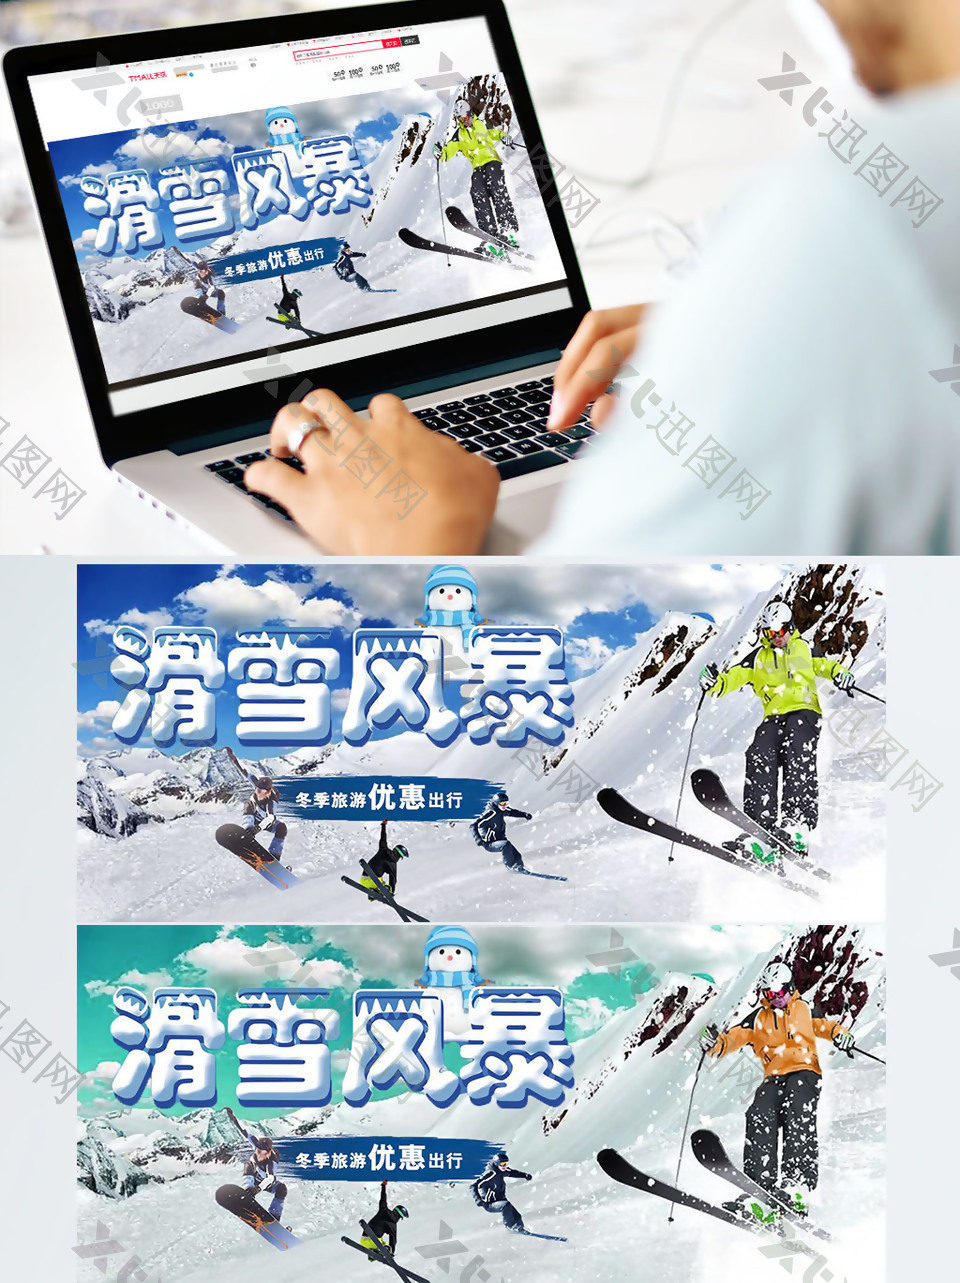 滑雪风暴滑雪节海报